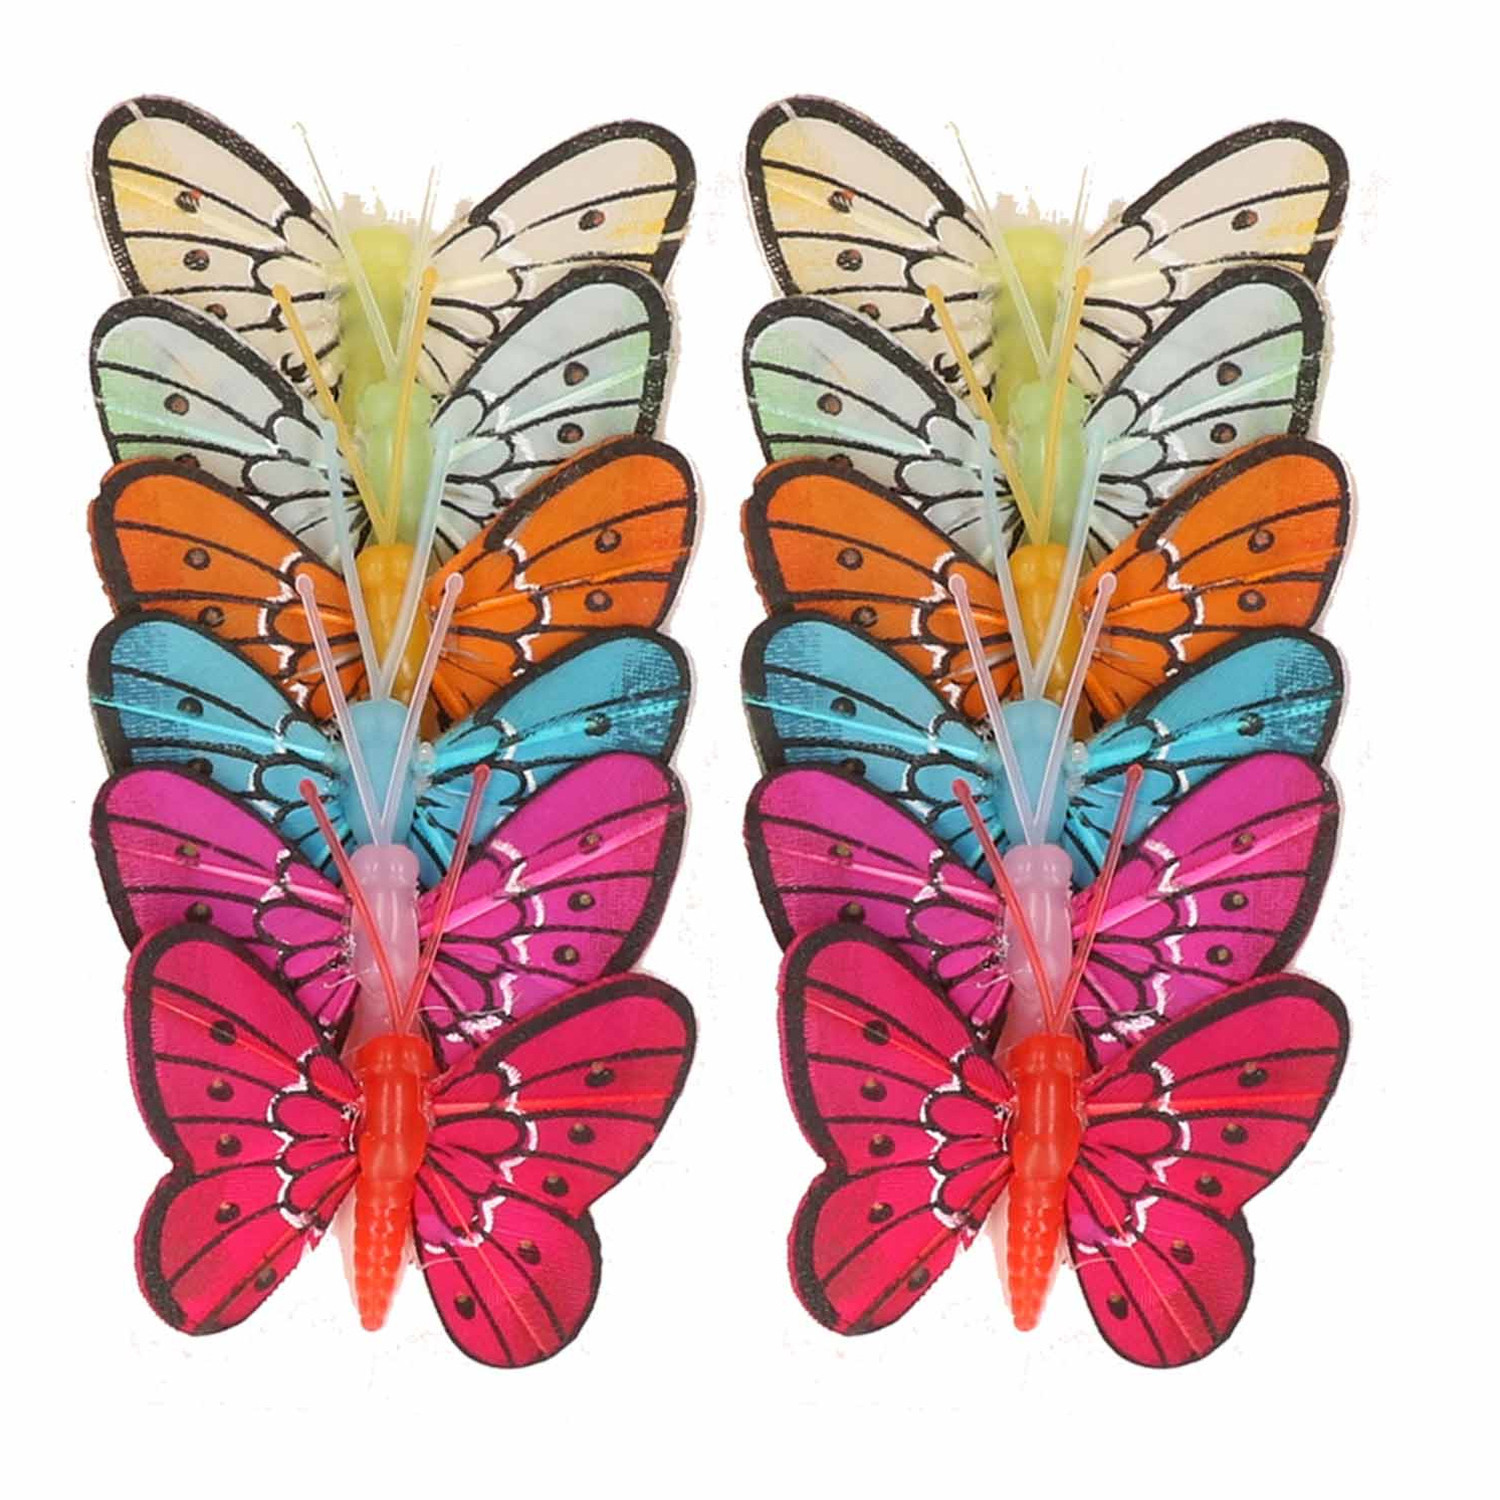 Gekleurde vlindertjes decoratie